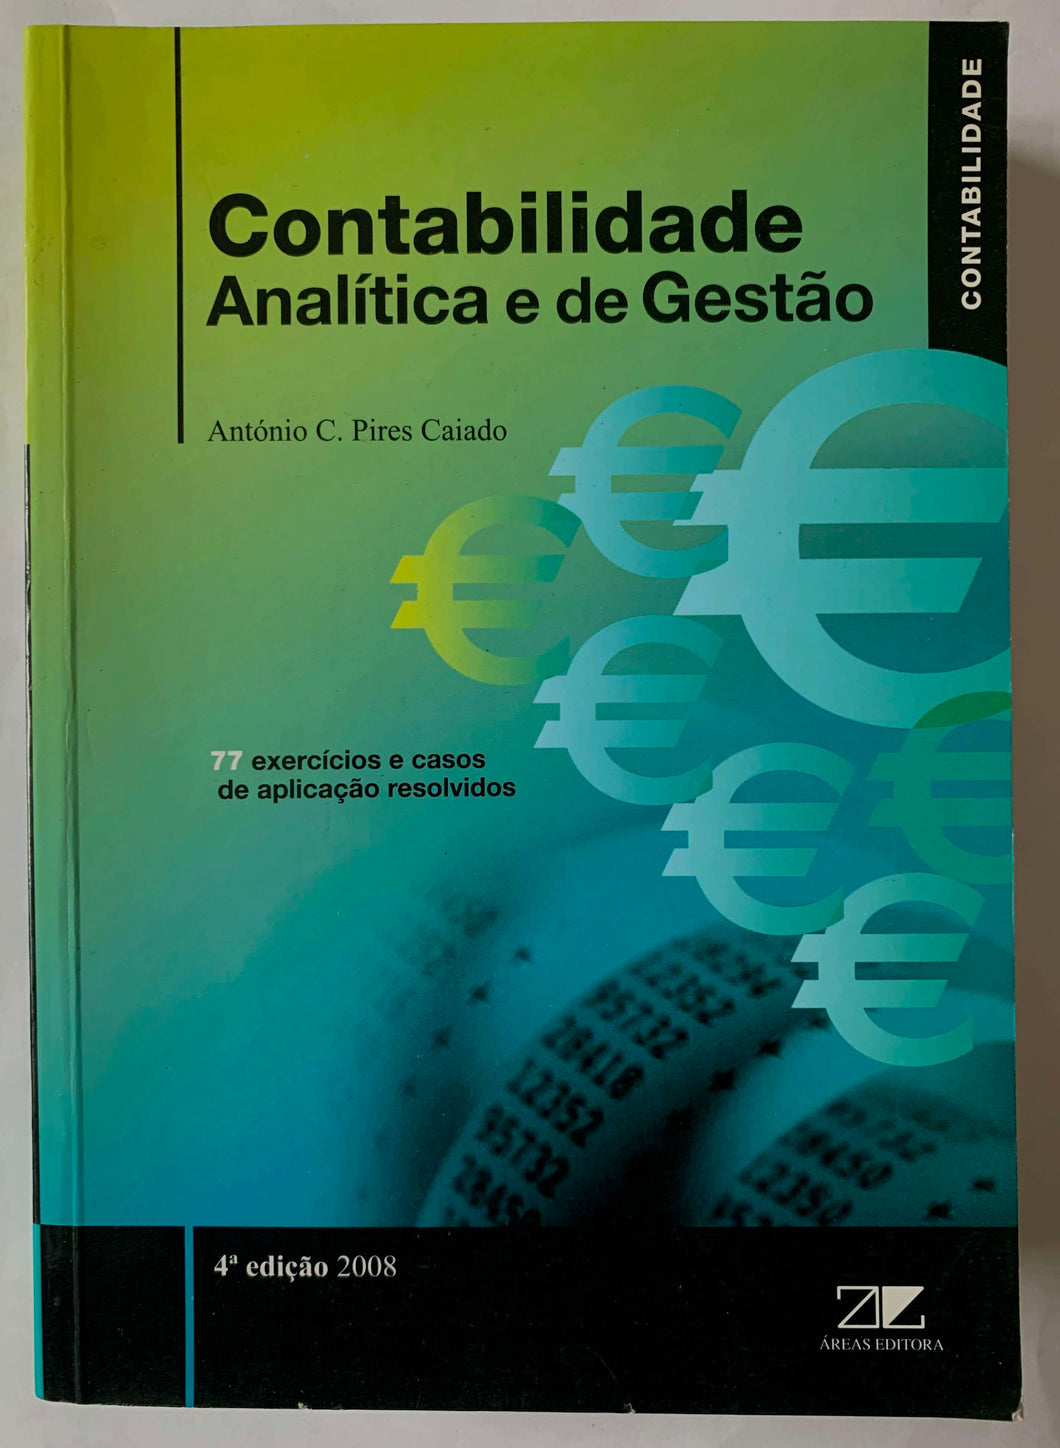 Contabilidade Analítica e de Gestão (4ª edição-2008)